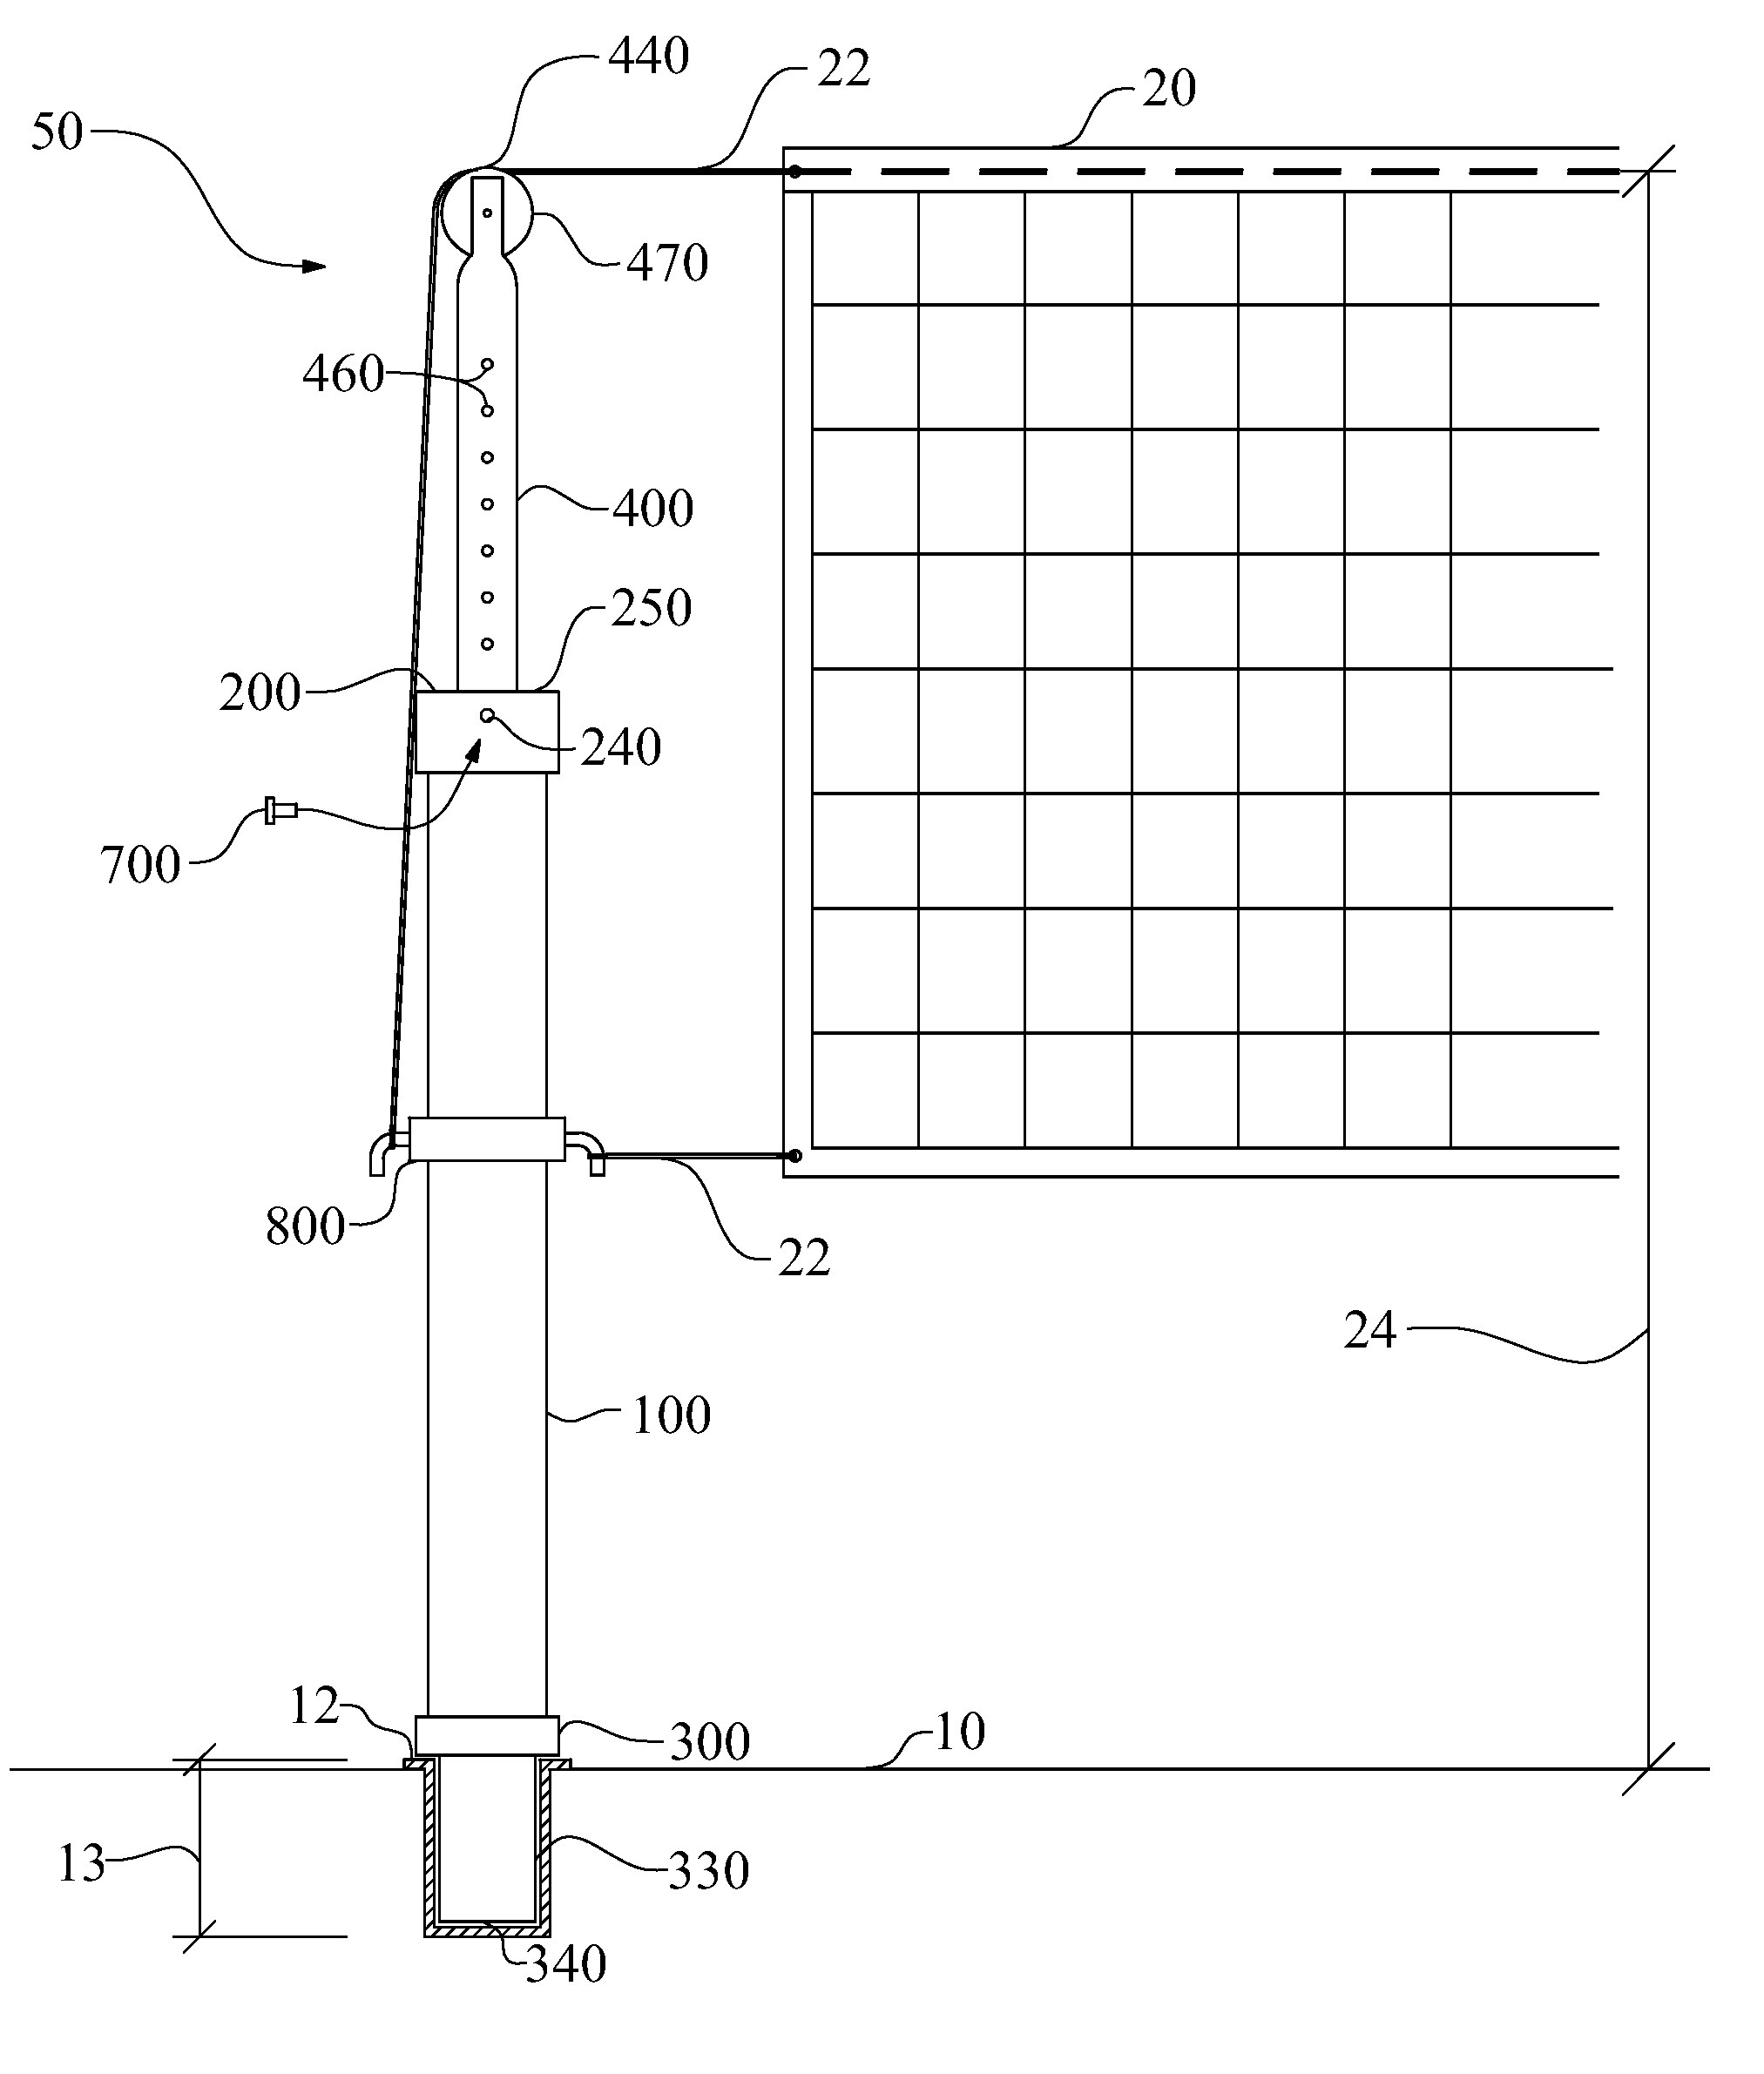 Multi-material composite locking upright